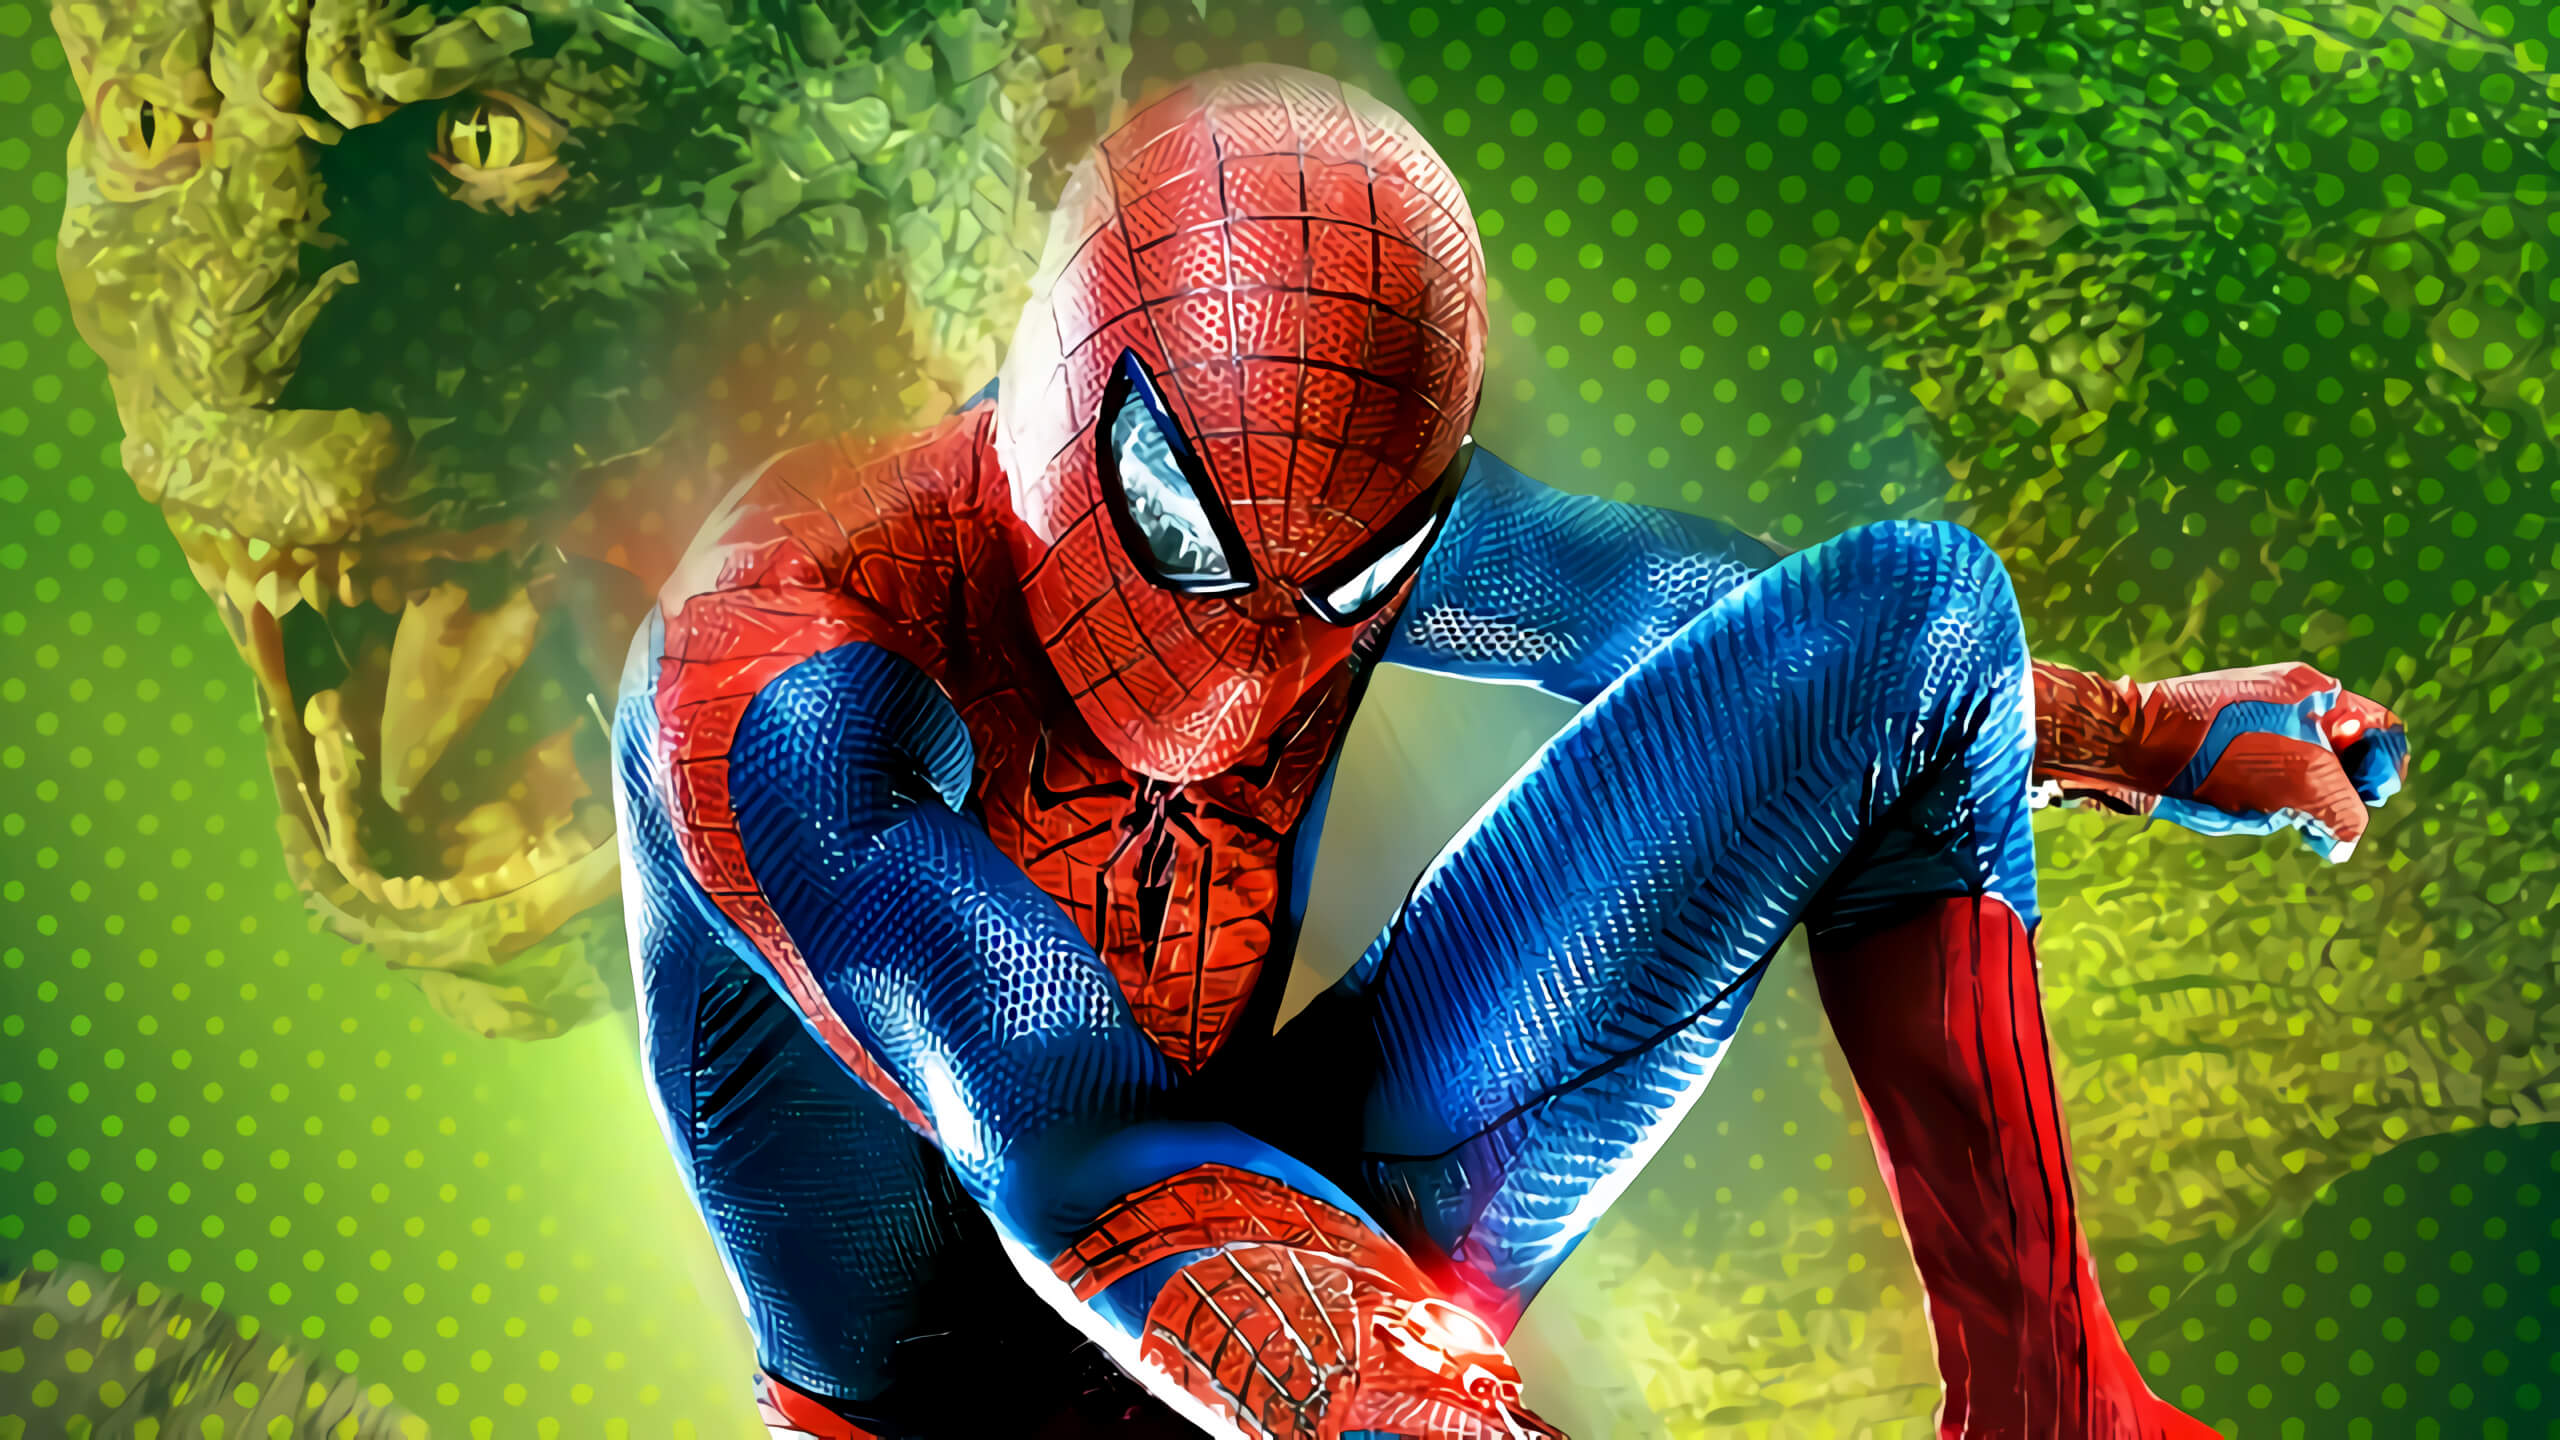 A Disney e a Sony Pictures anunciaram um acordo para colocar os filmes e séries do Spider Man (Homem aranha) no streaming do Disney Plus.